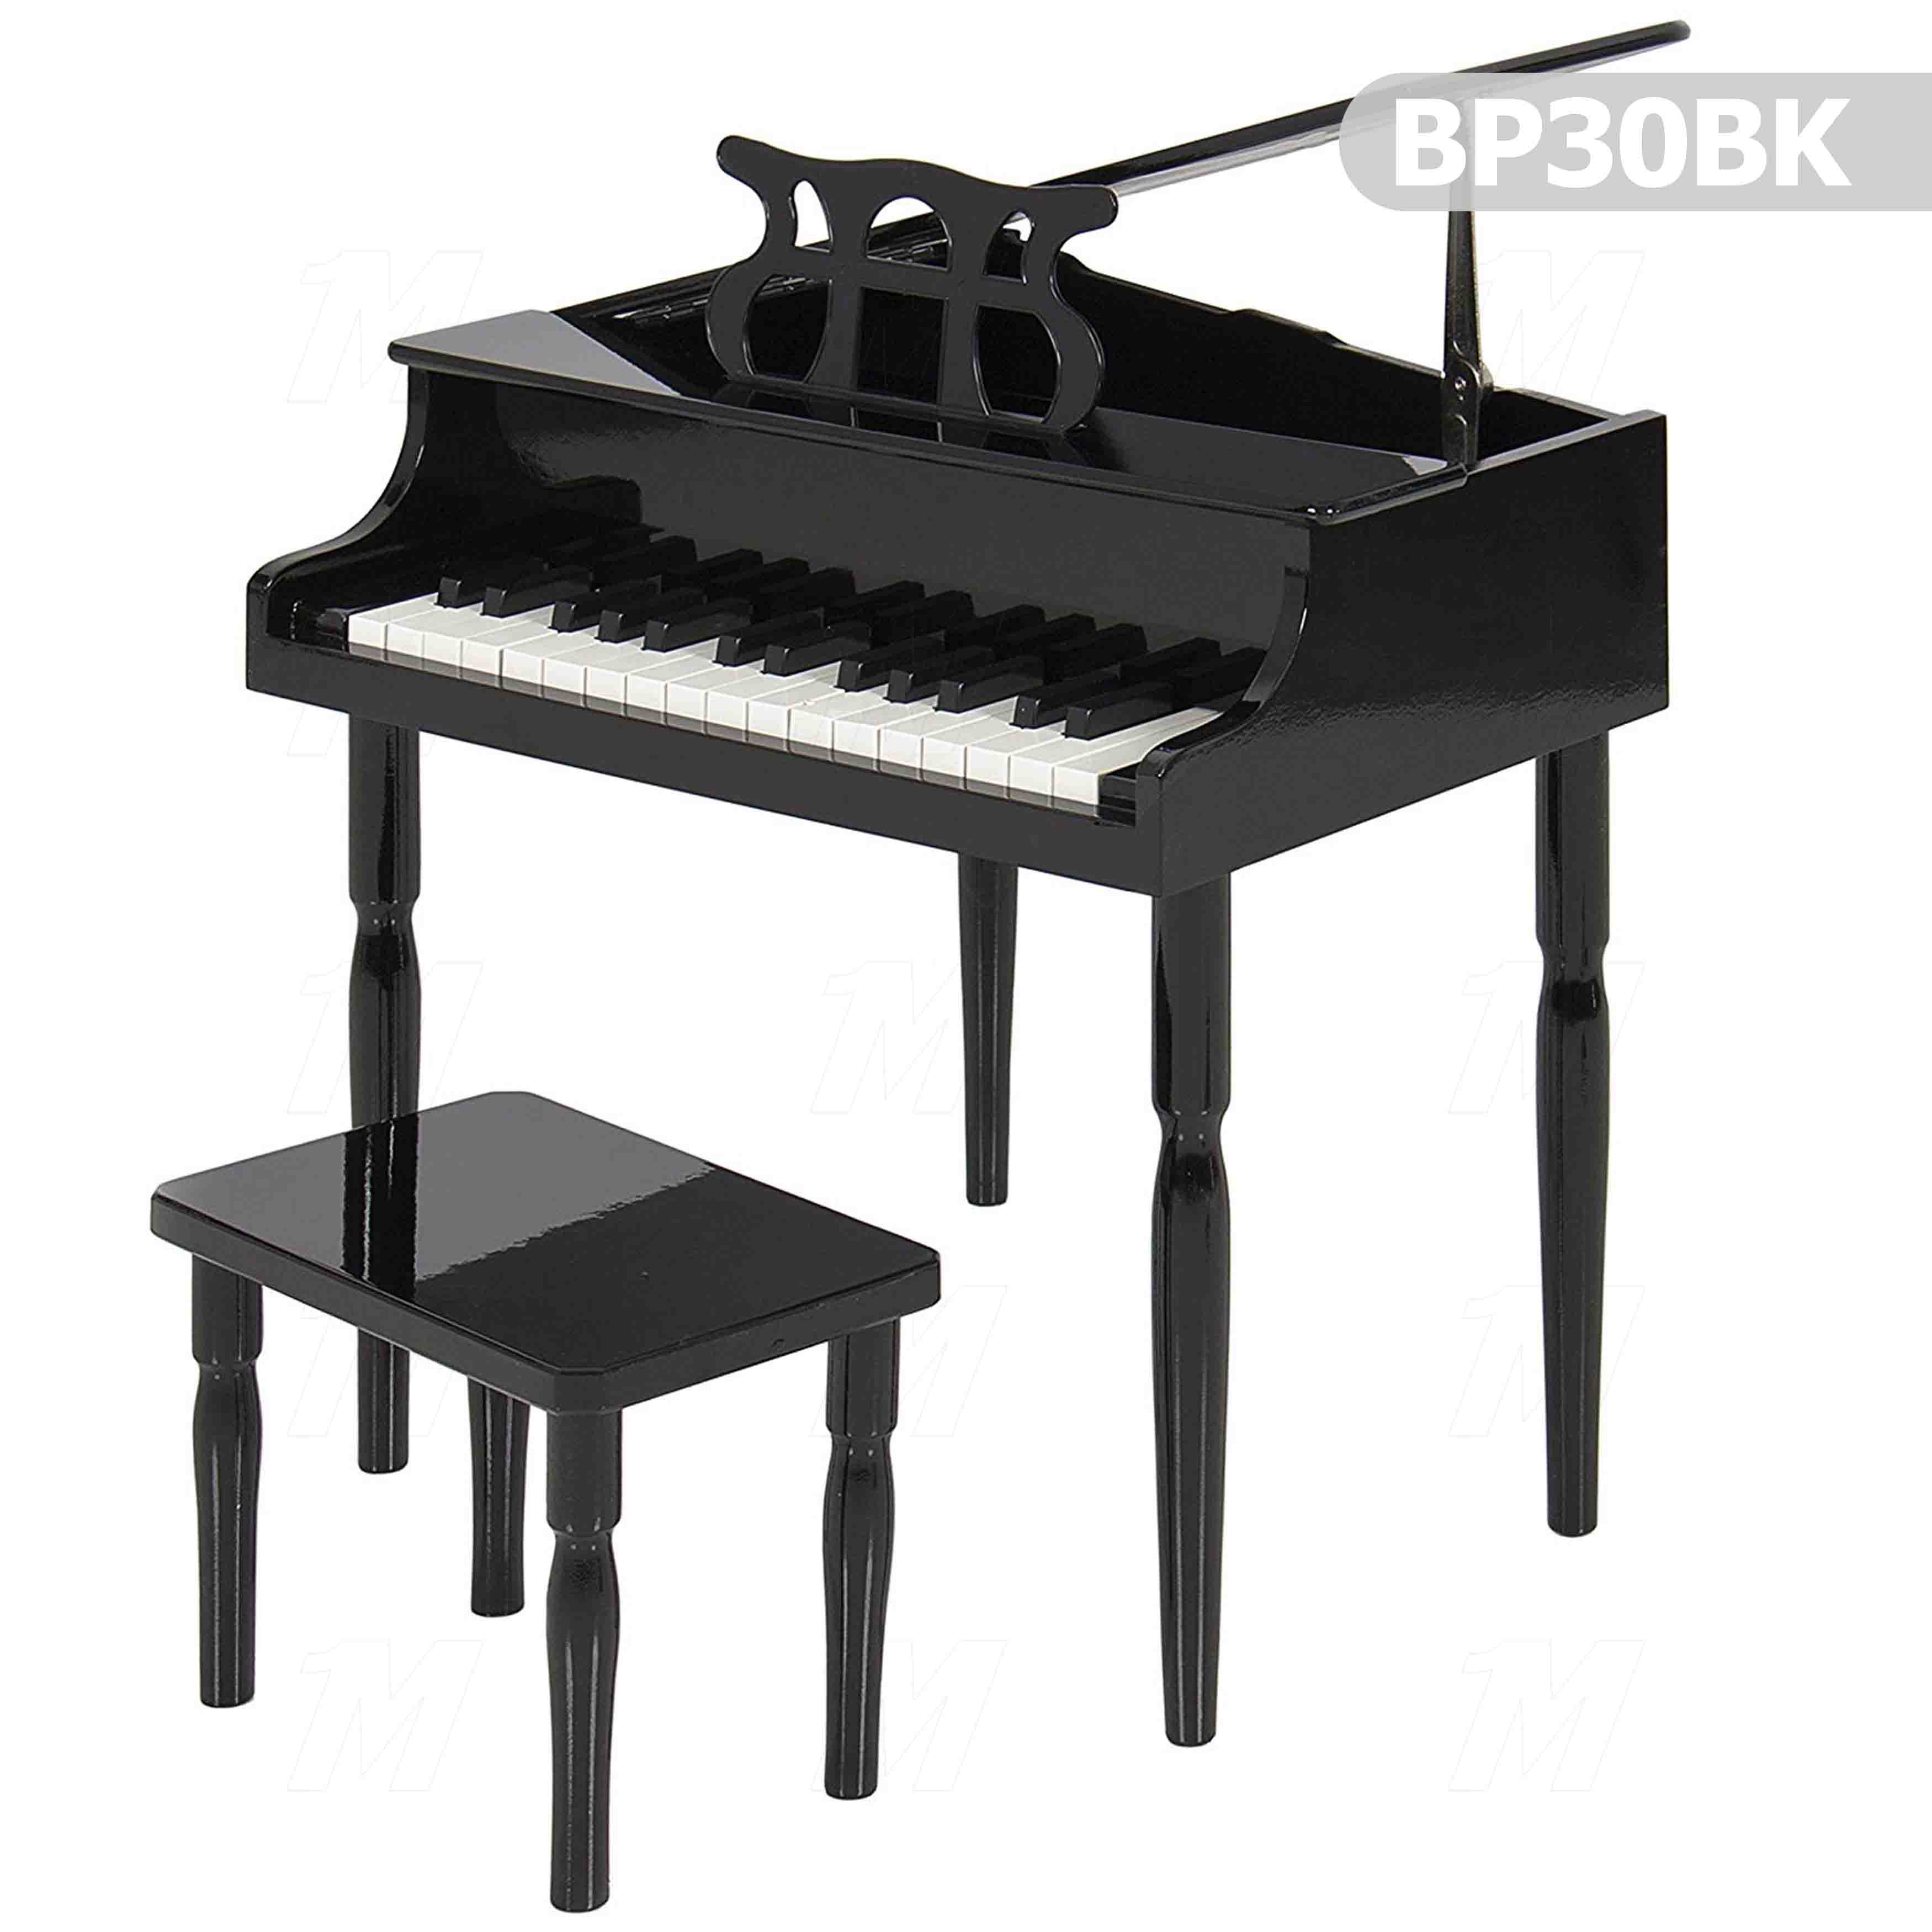 Children's Wooden Piano BP30BK